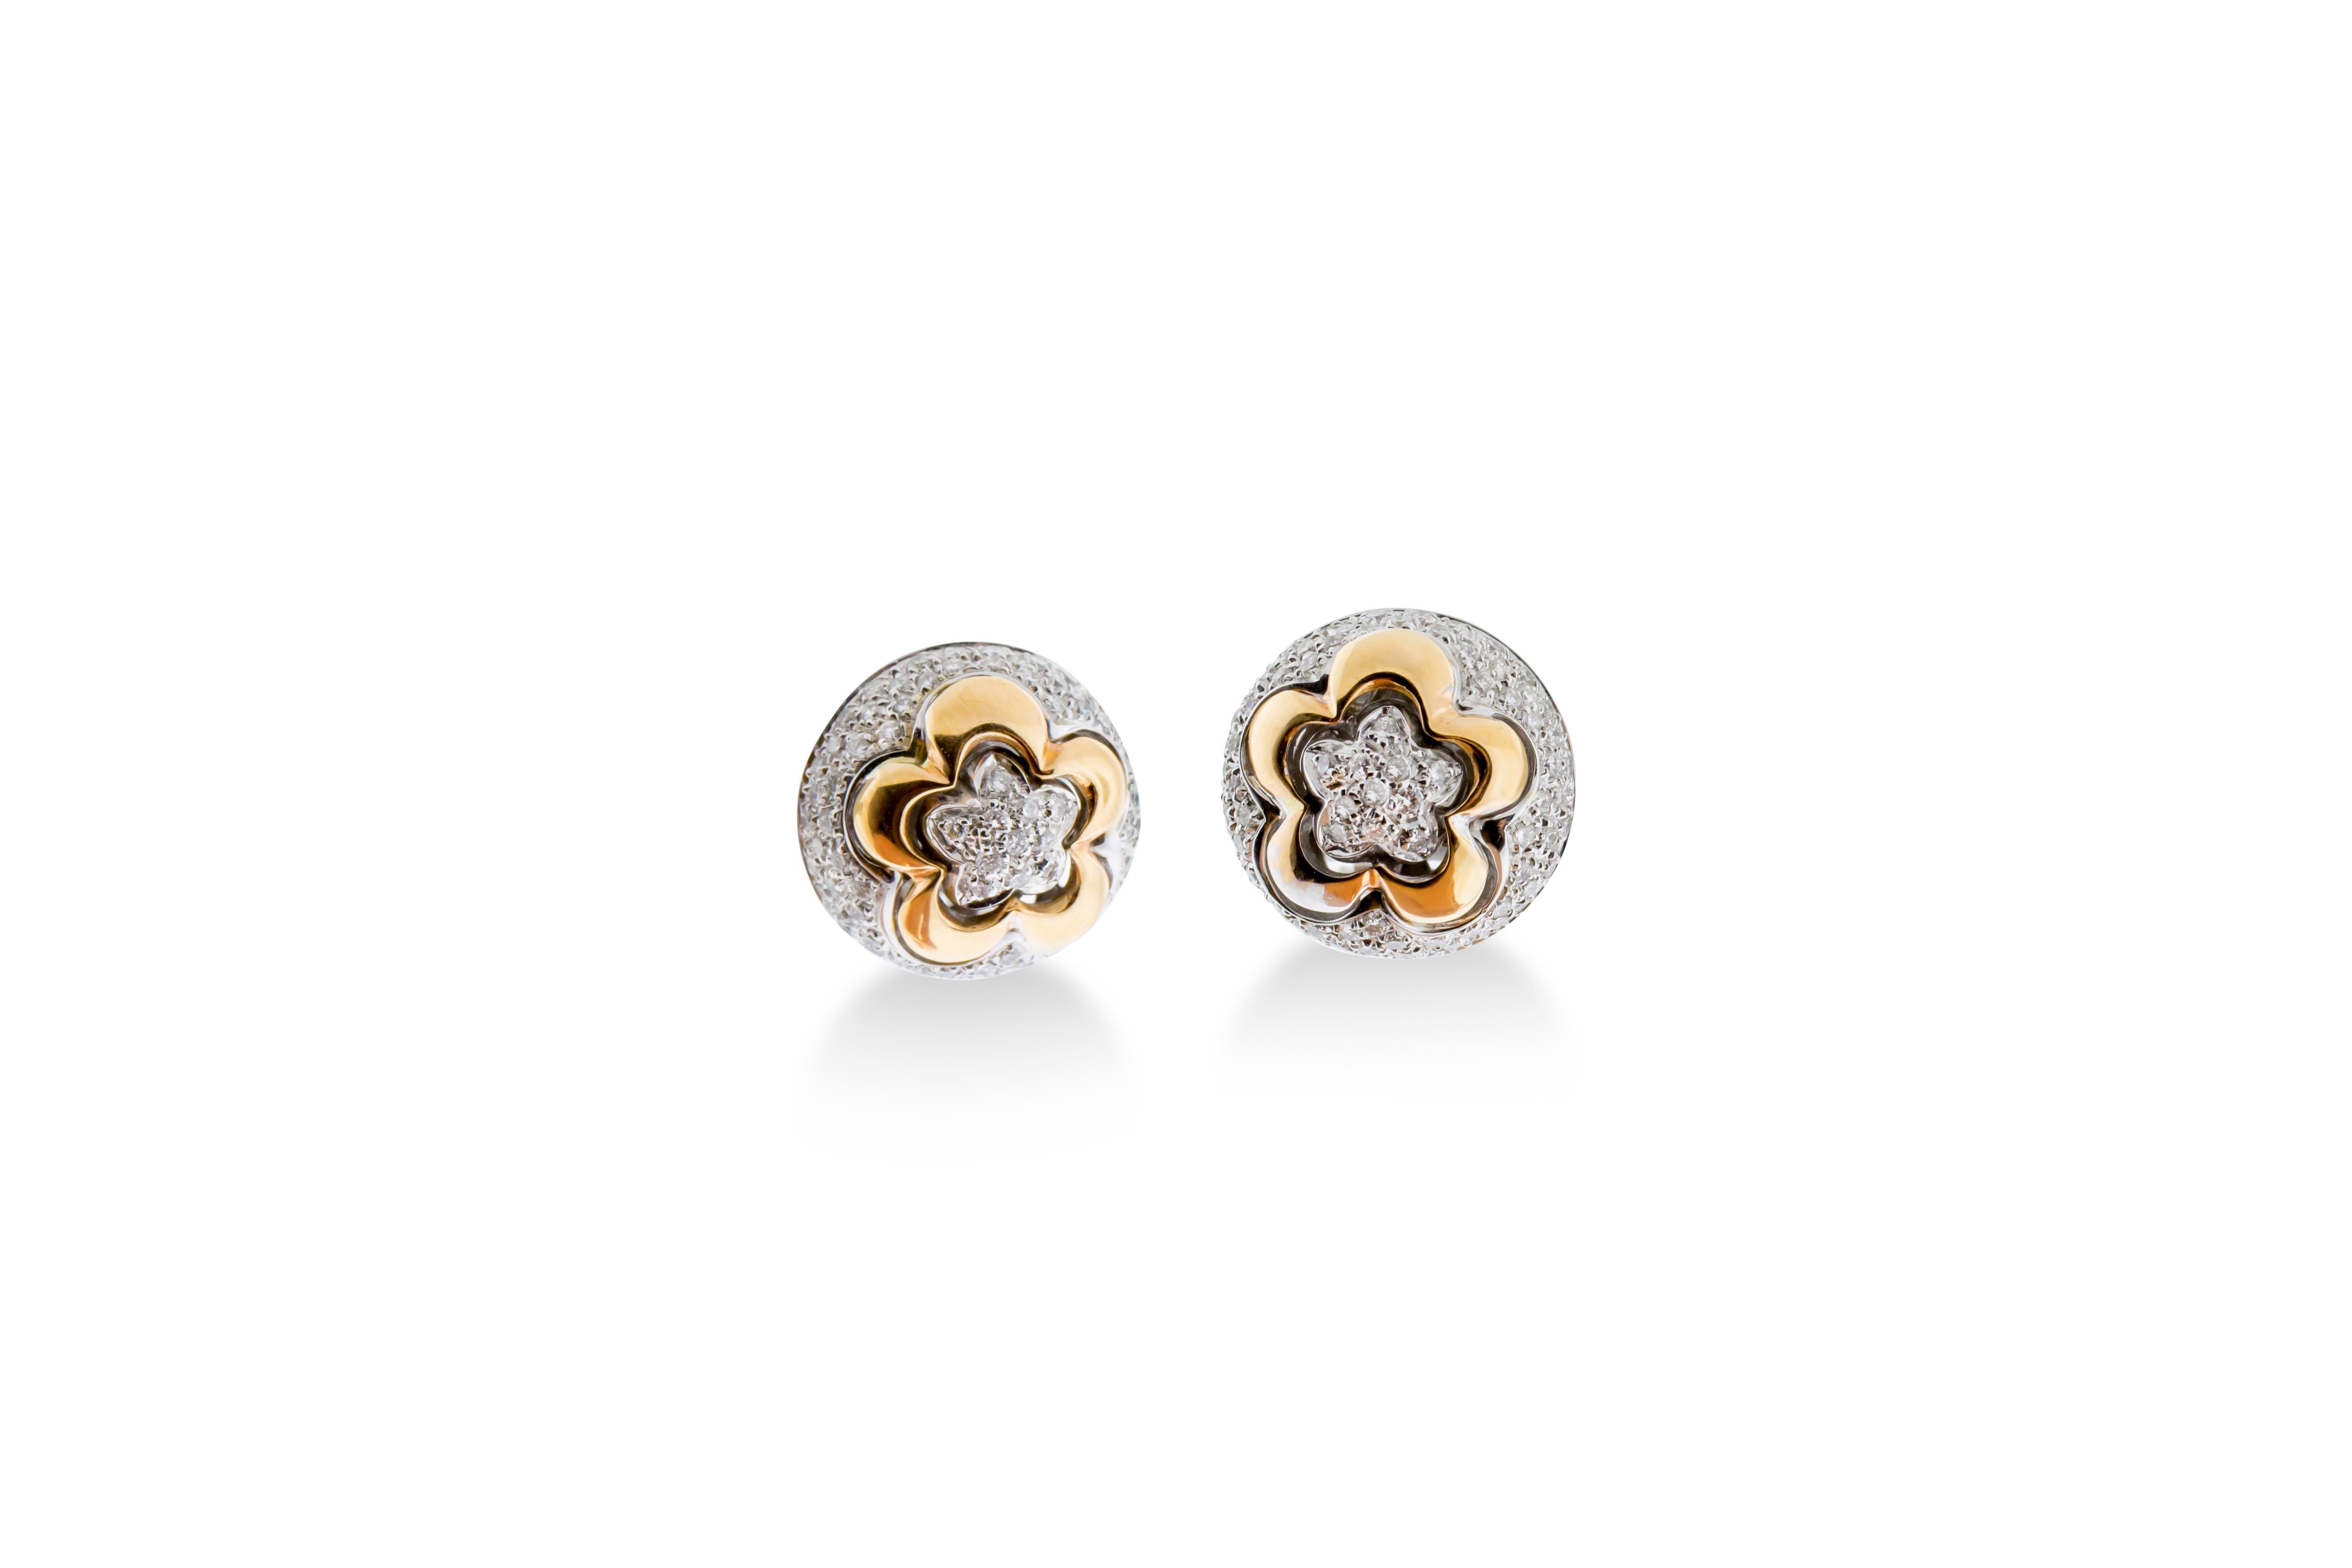 Une paire de clips d'oreille présentant 1,44 carats de diamants ronds G-H VS sertis dans 12 grammes d'or rose et blanc 18K. diamètre de 16 mm.

Visites disponibles dans notre salle d'exposition à New York sur rendez-vous.